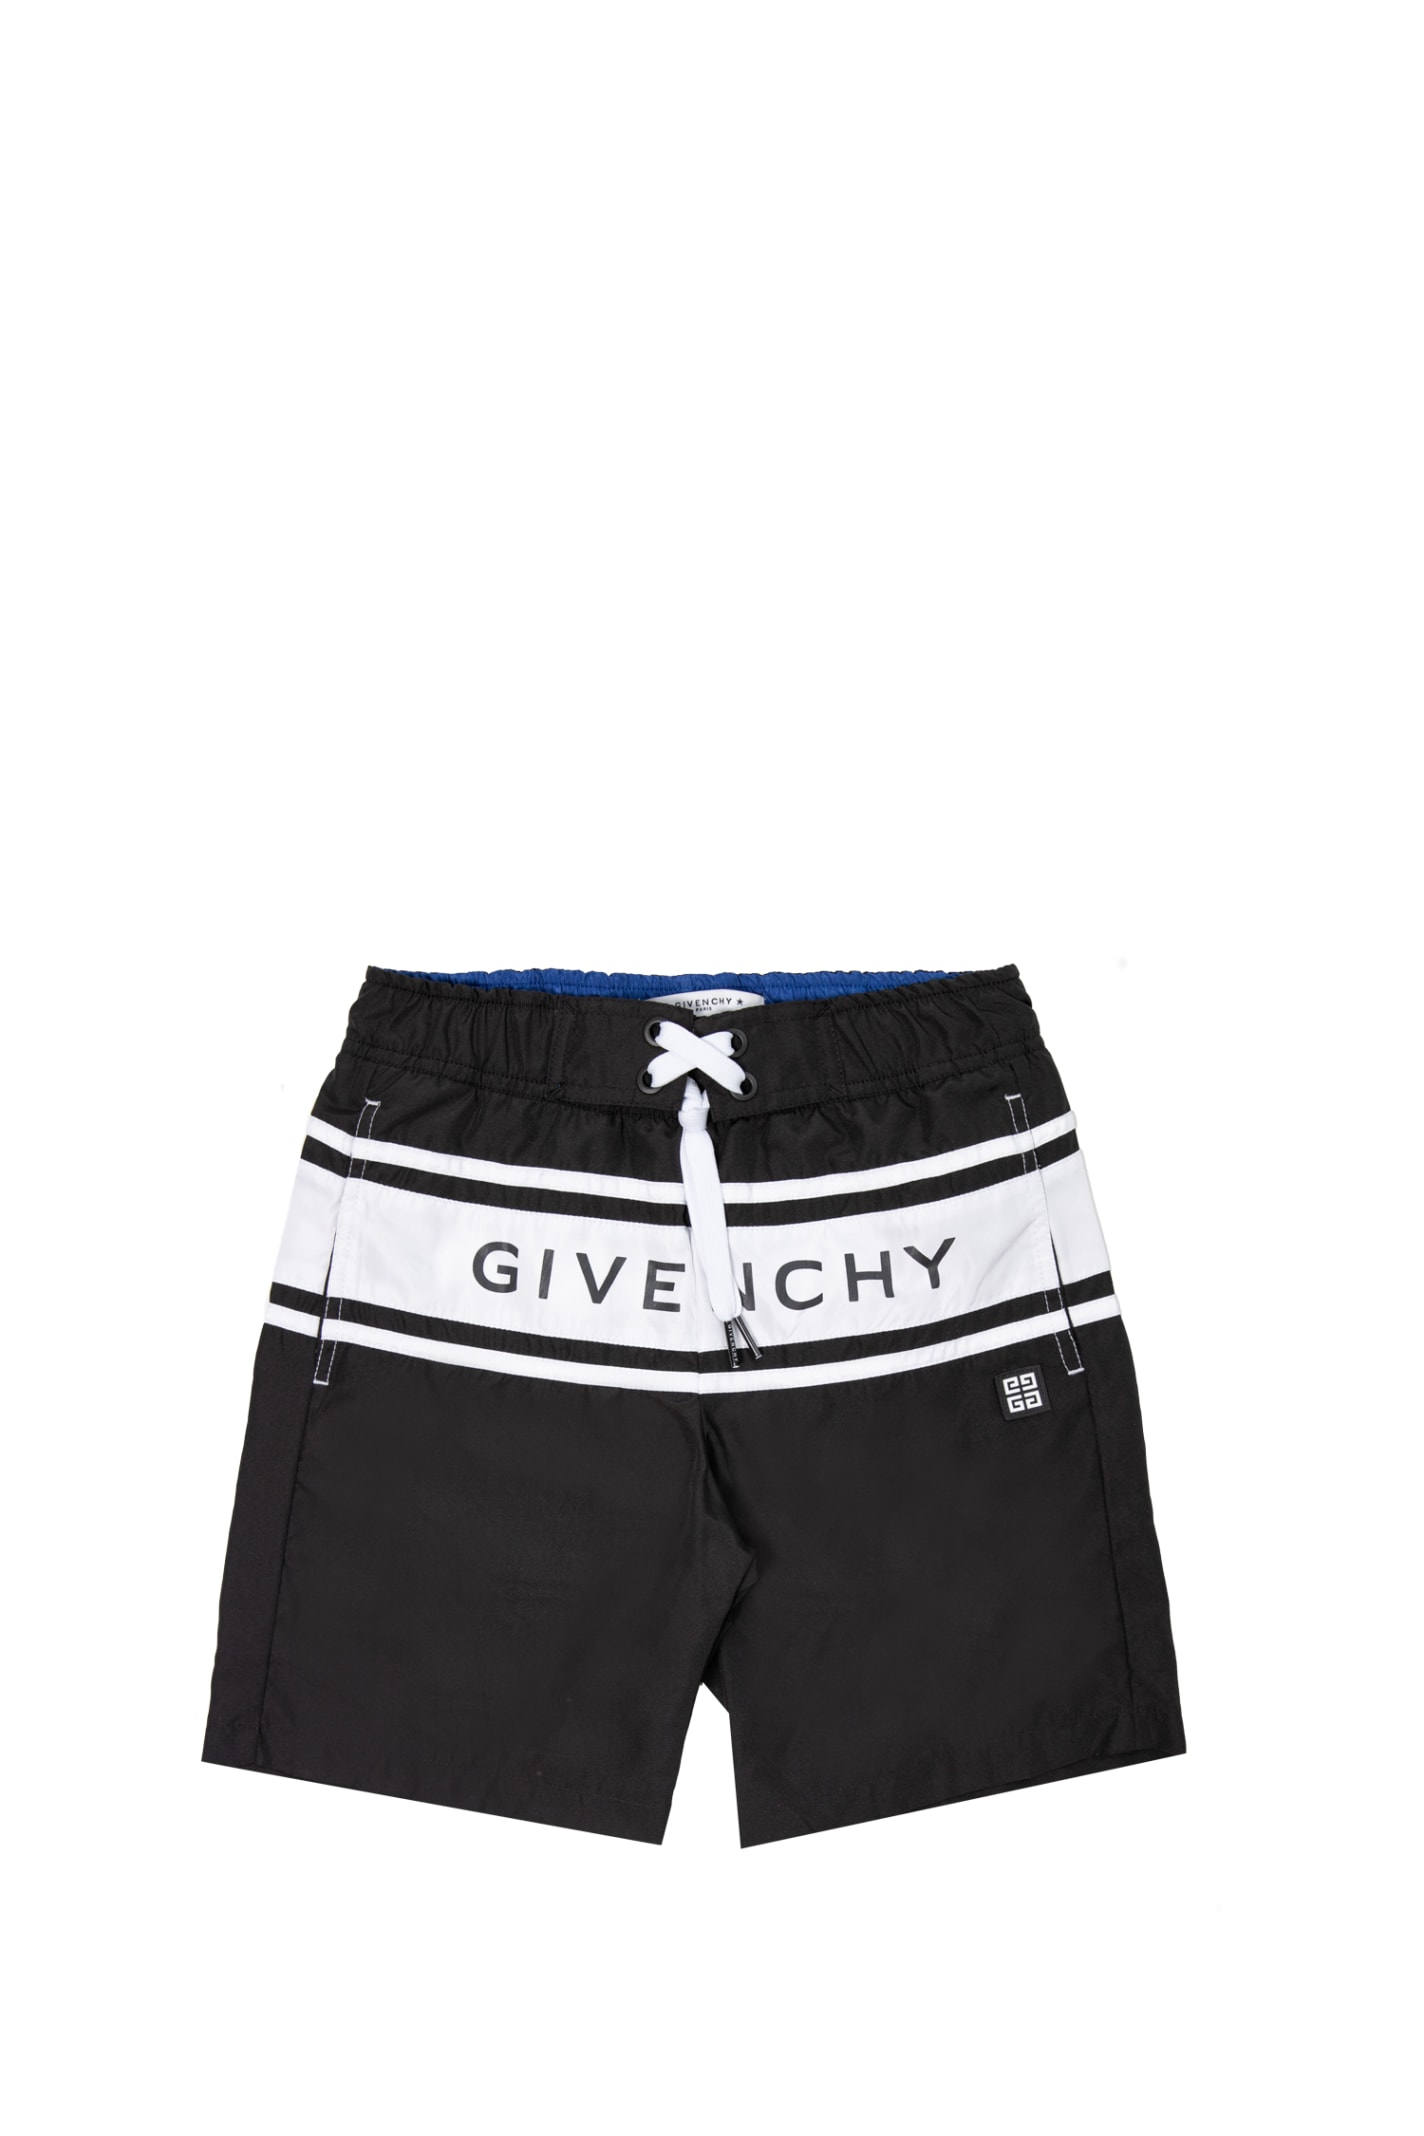 Givenchy Kids' Nylon Swim Shorts In Back